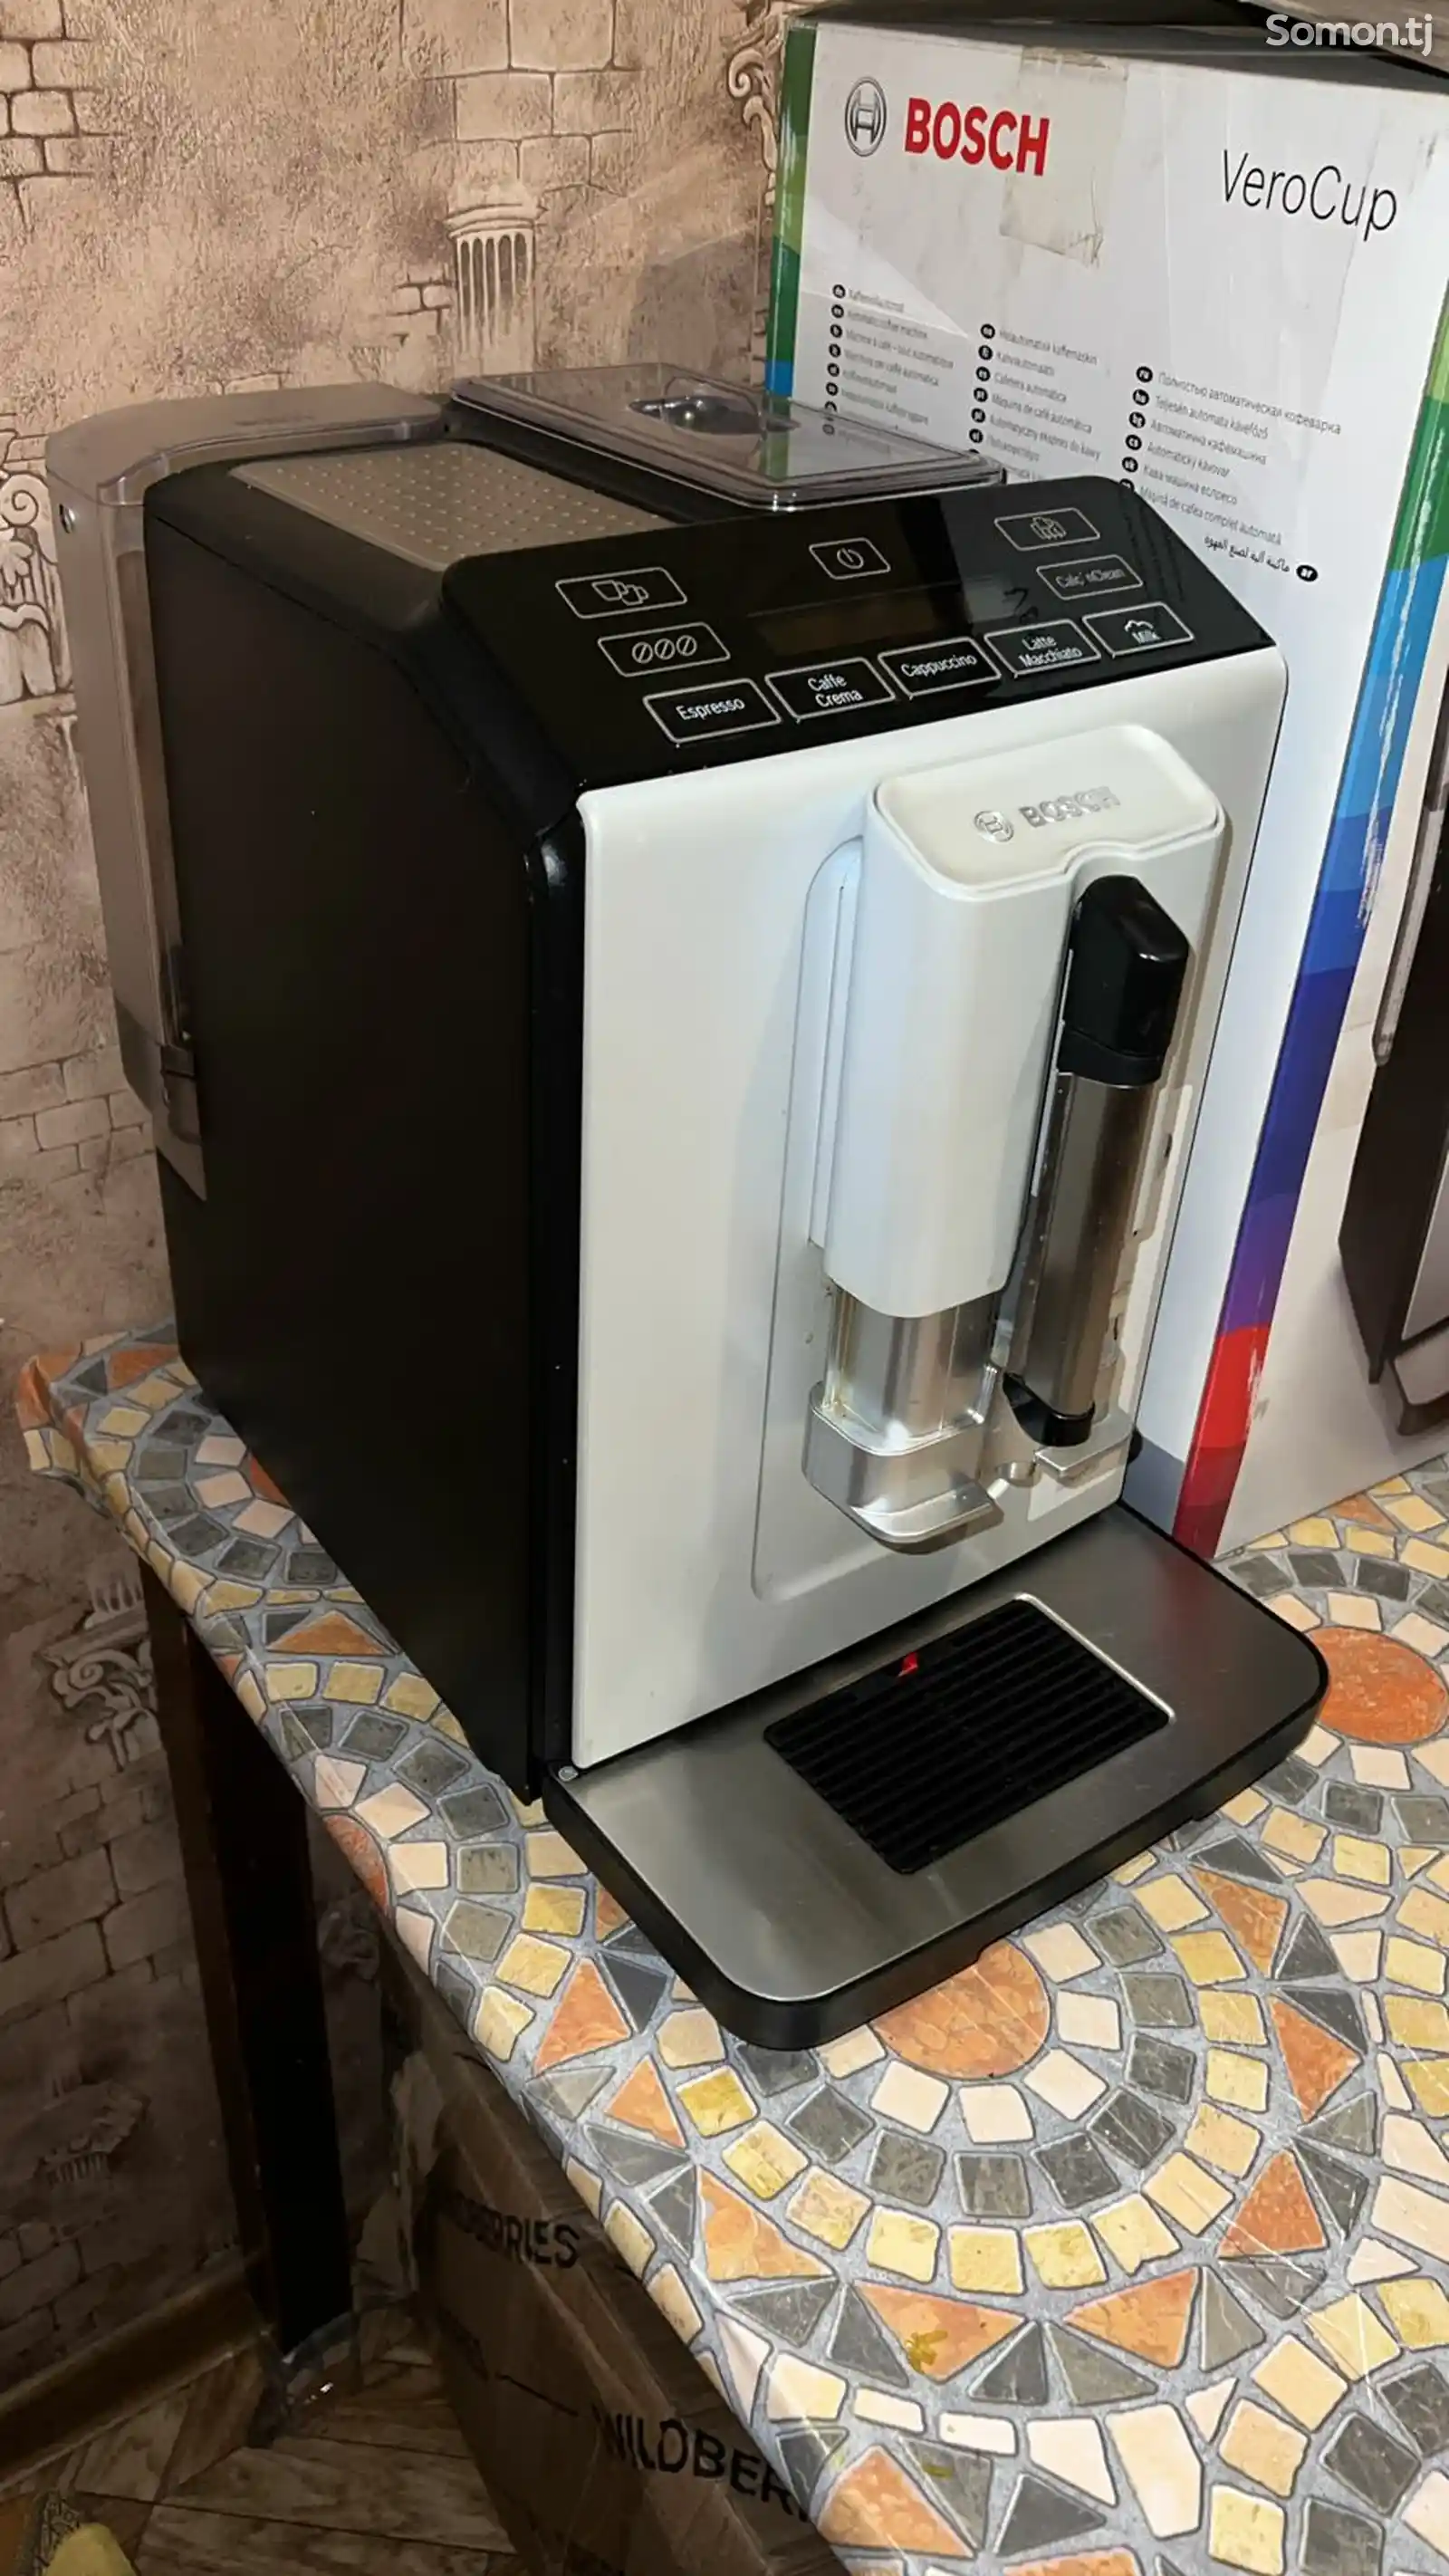 Автоматическая кофемашина Bosch VeroCup 300-1